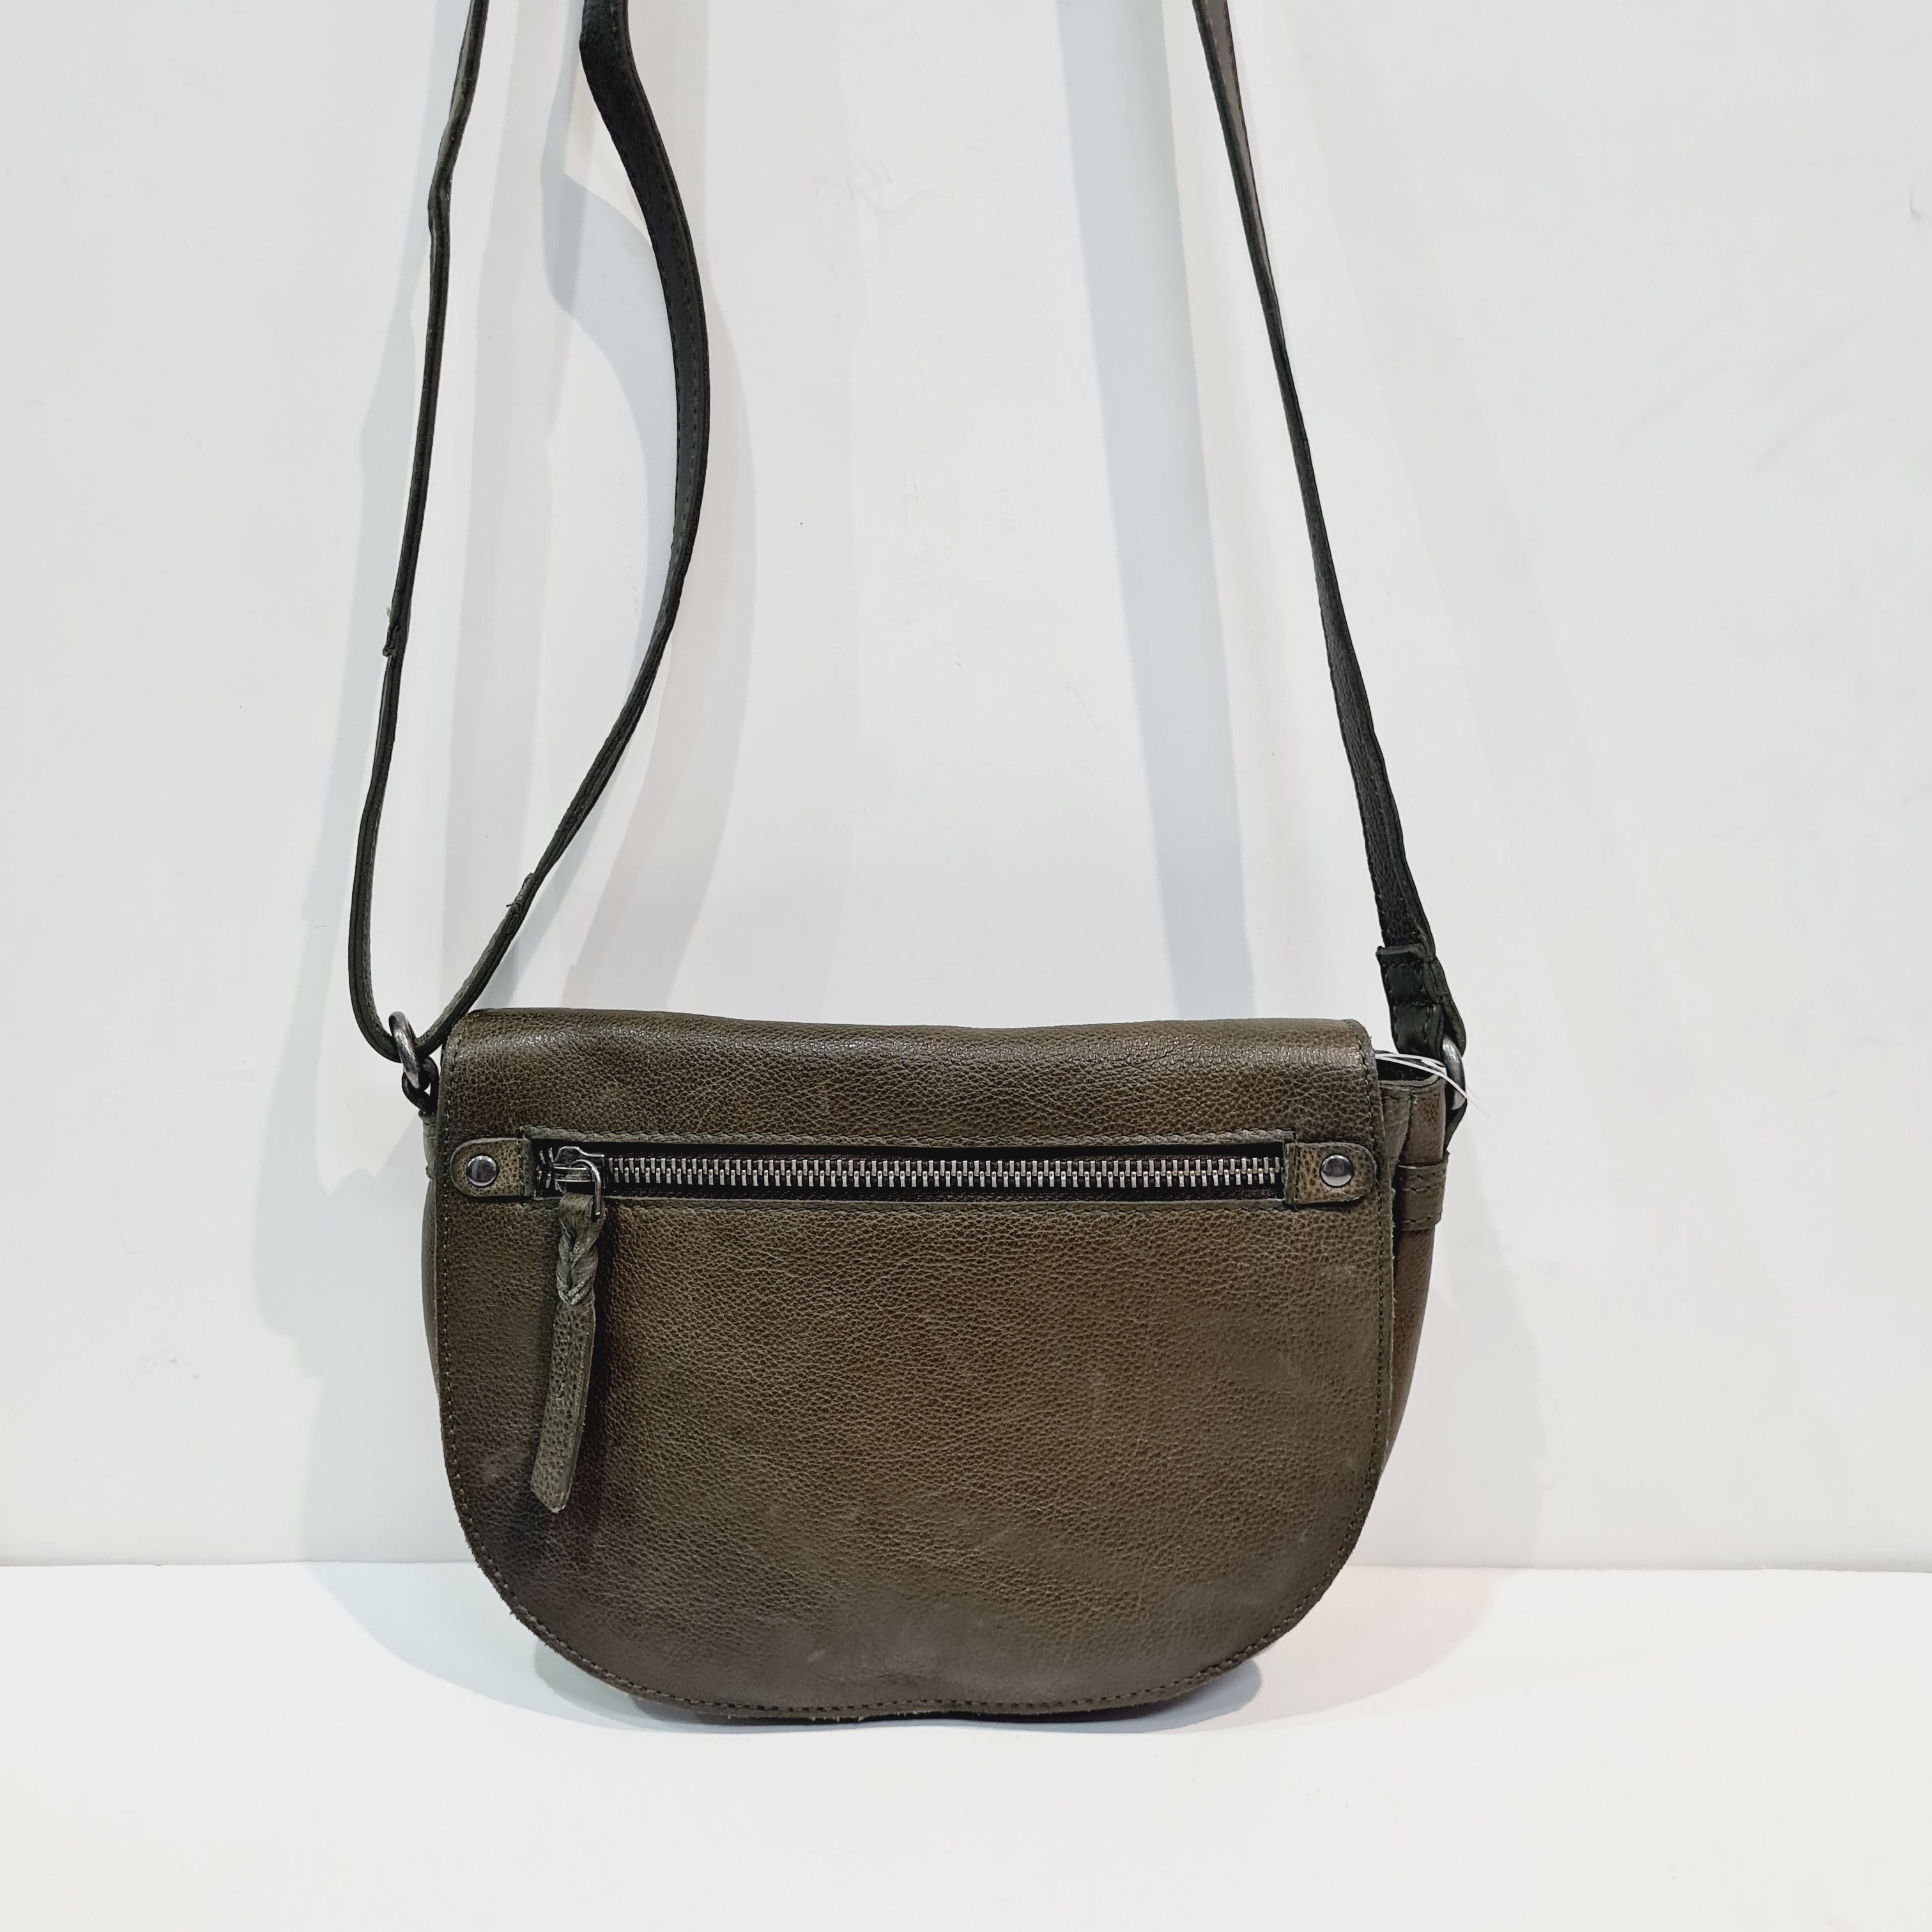 Modapelle Women's Leather Blazer Bag